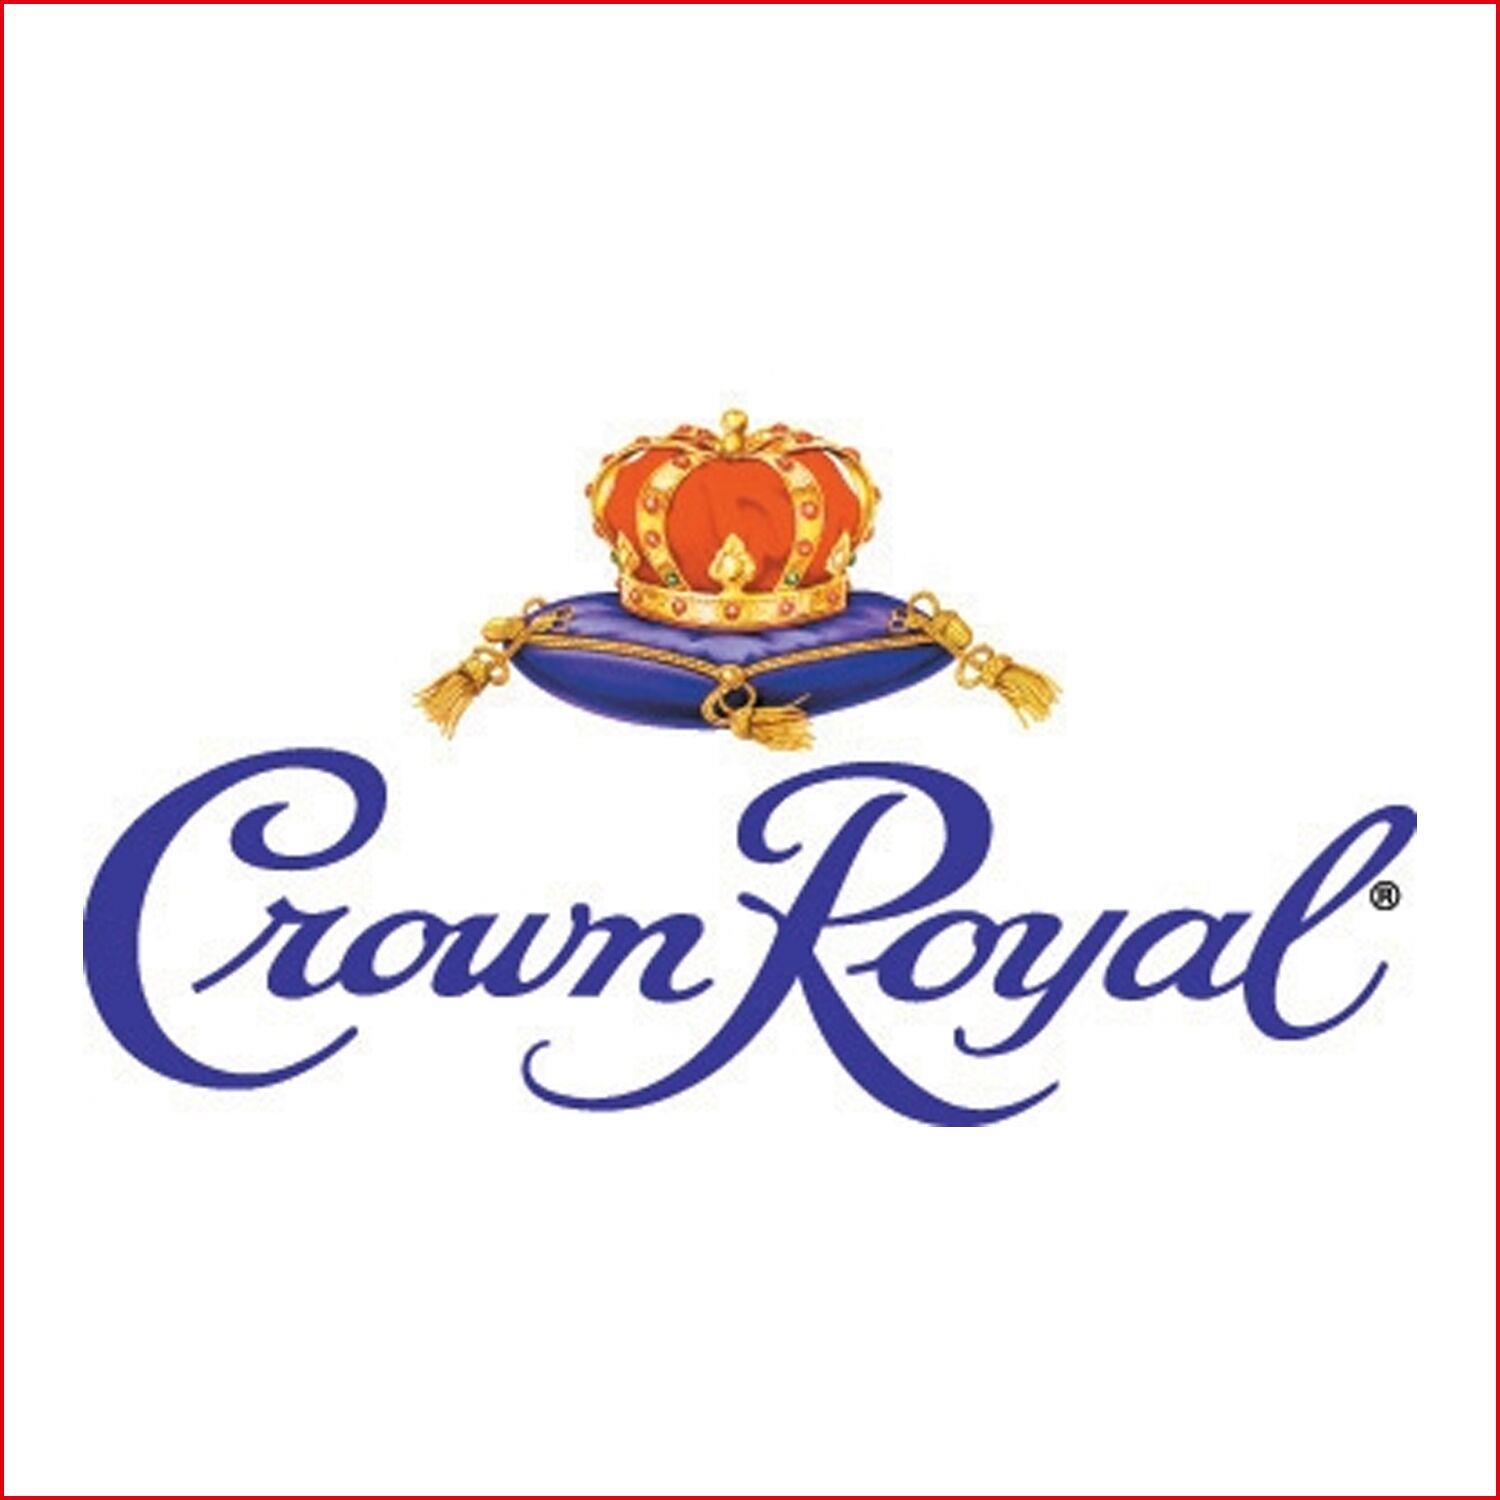 皇冠 Crown Royal